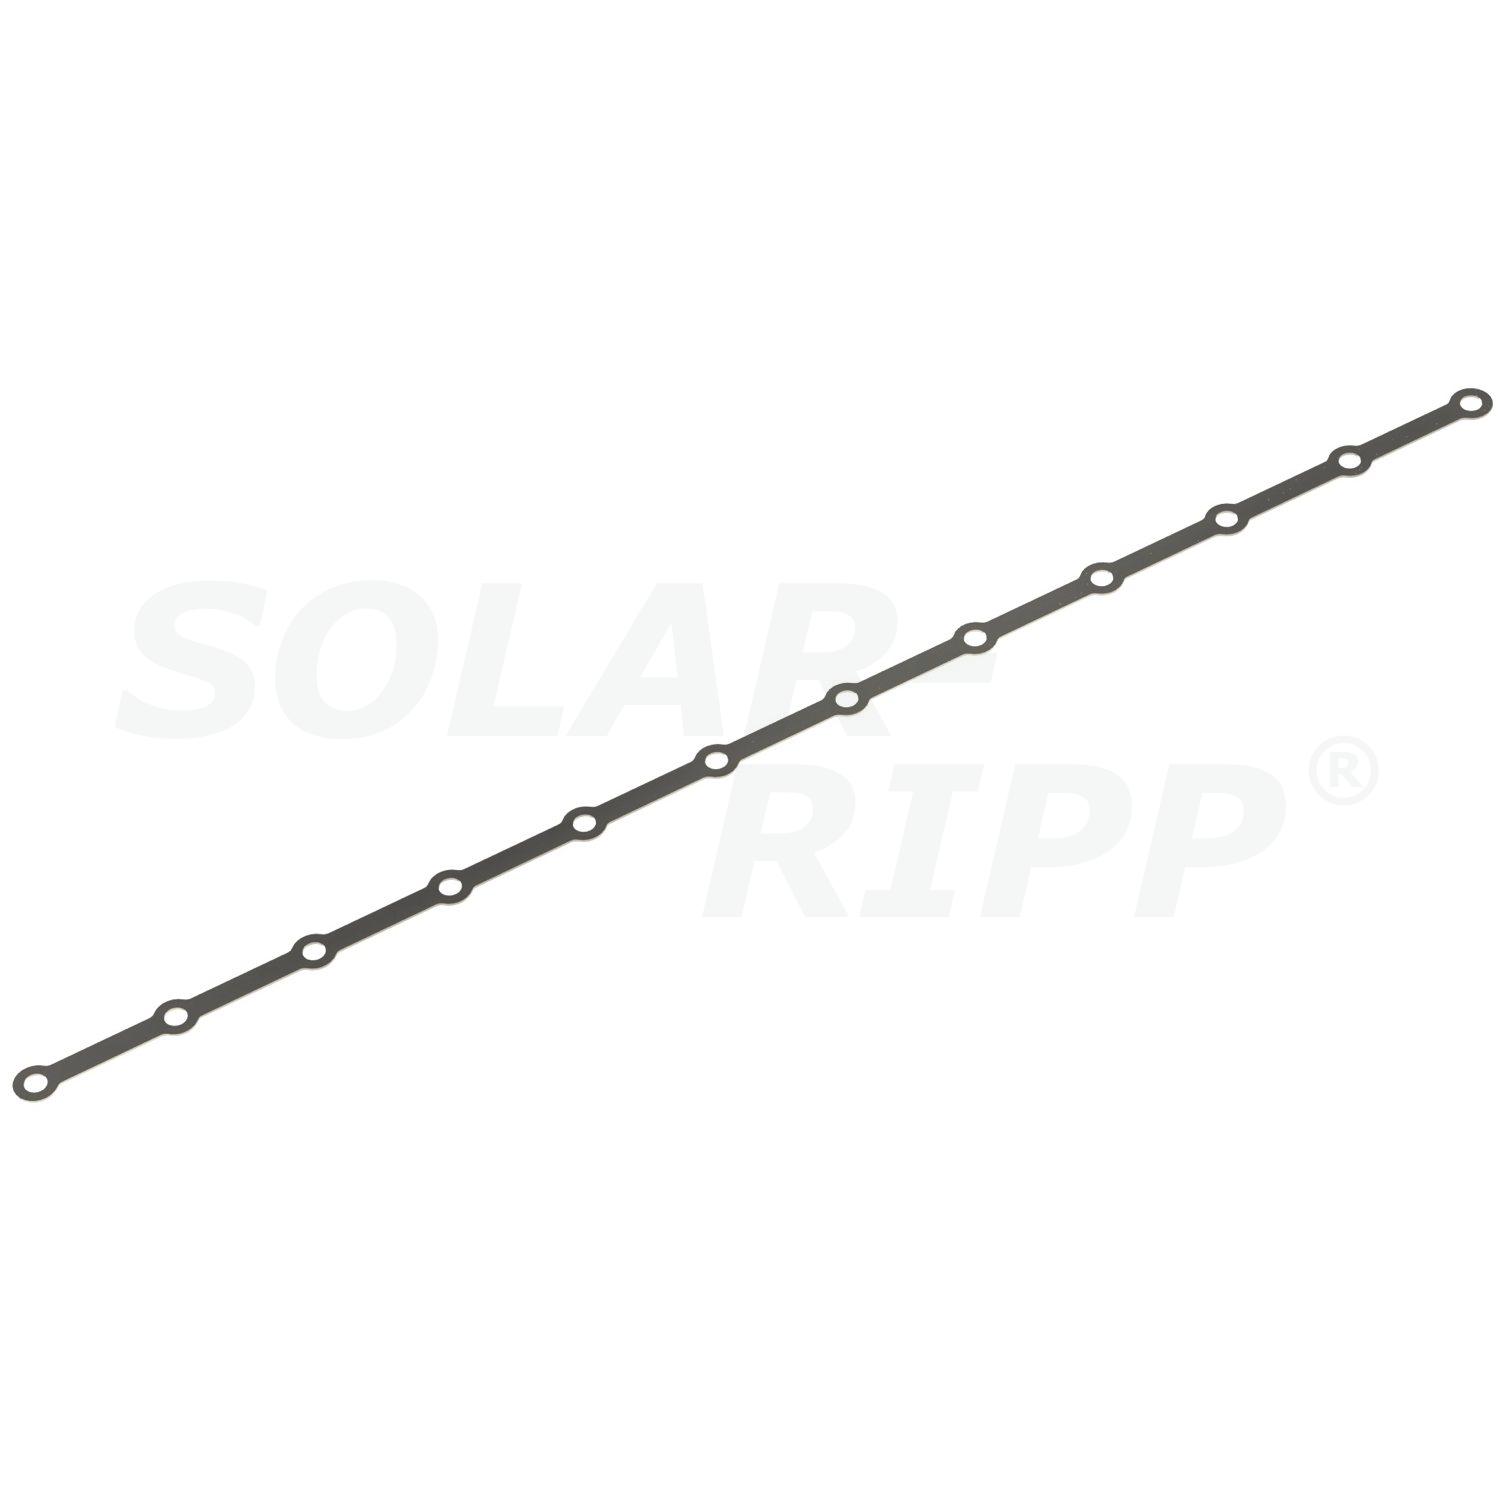 SOLAR-RIPP ® dağıtıcı/toplayıcıyı sabitlemek için delikli şeritler